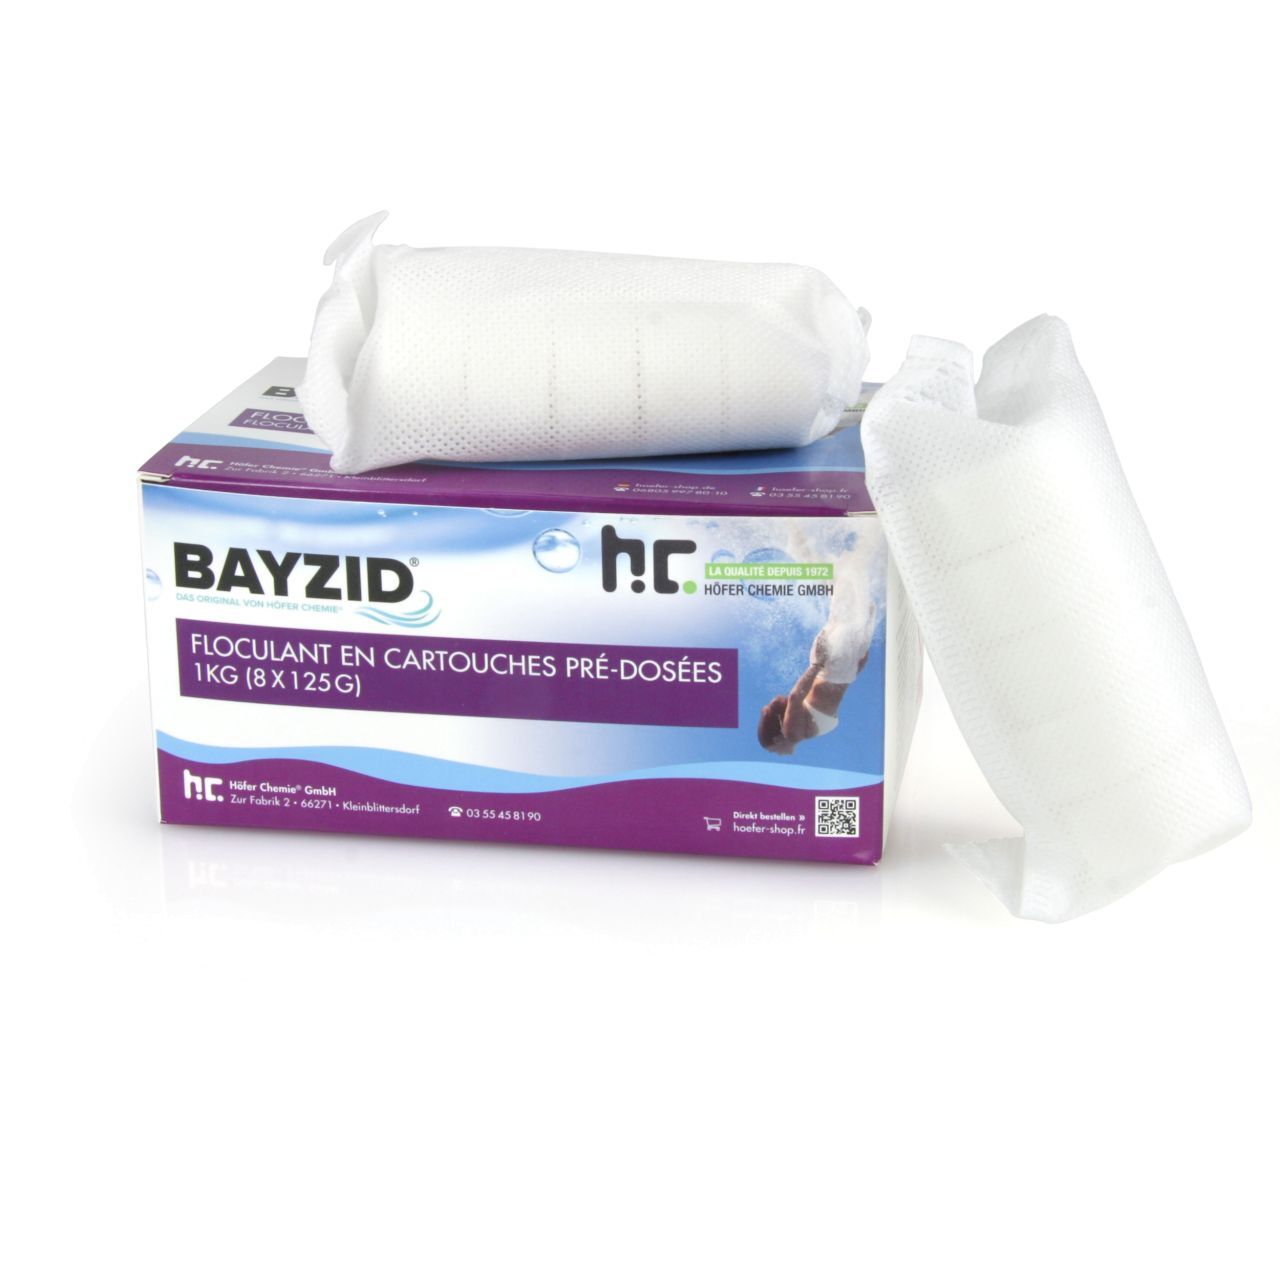 BAYZID 16 kg BAYZID® Cartouches de floculant pré-dosées (8x 125g) (16 x 1 kg)